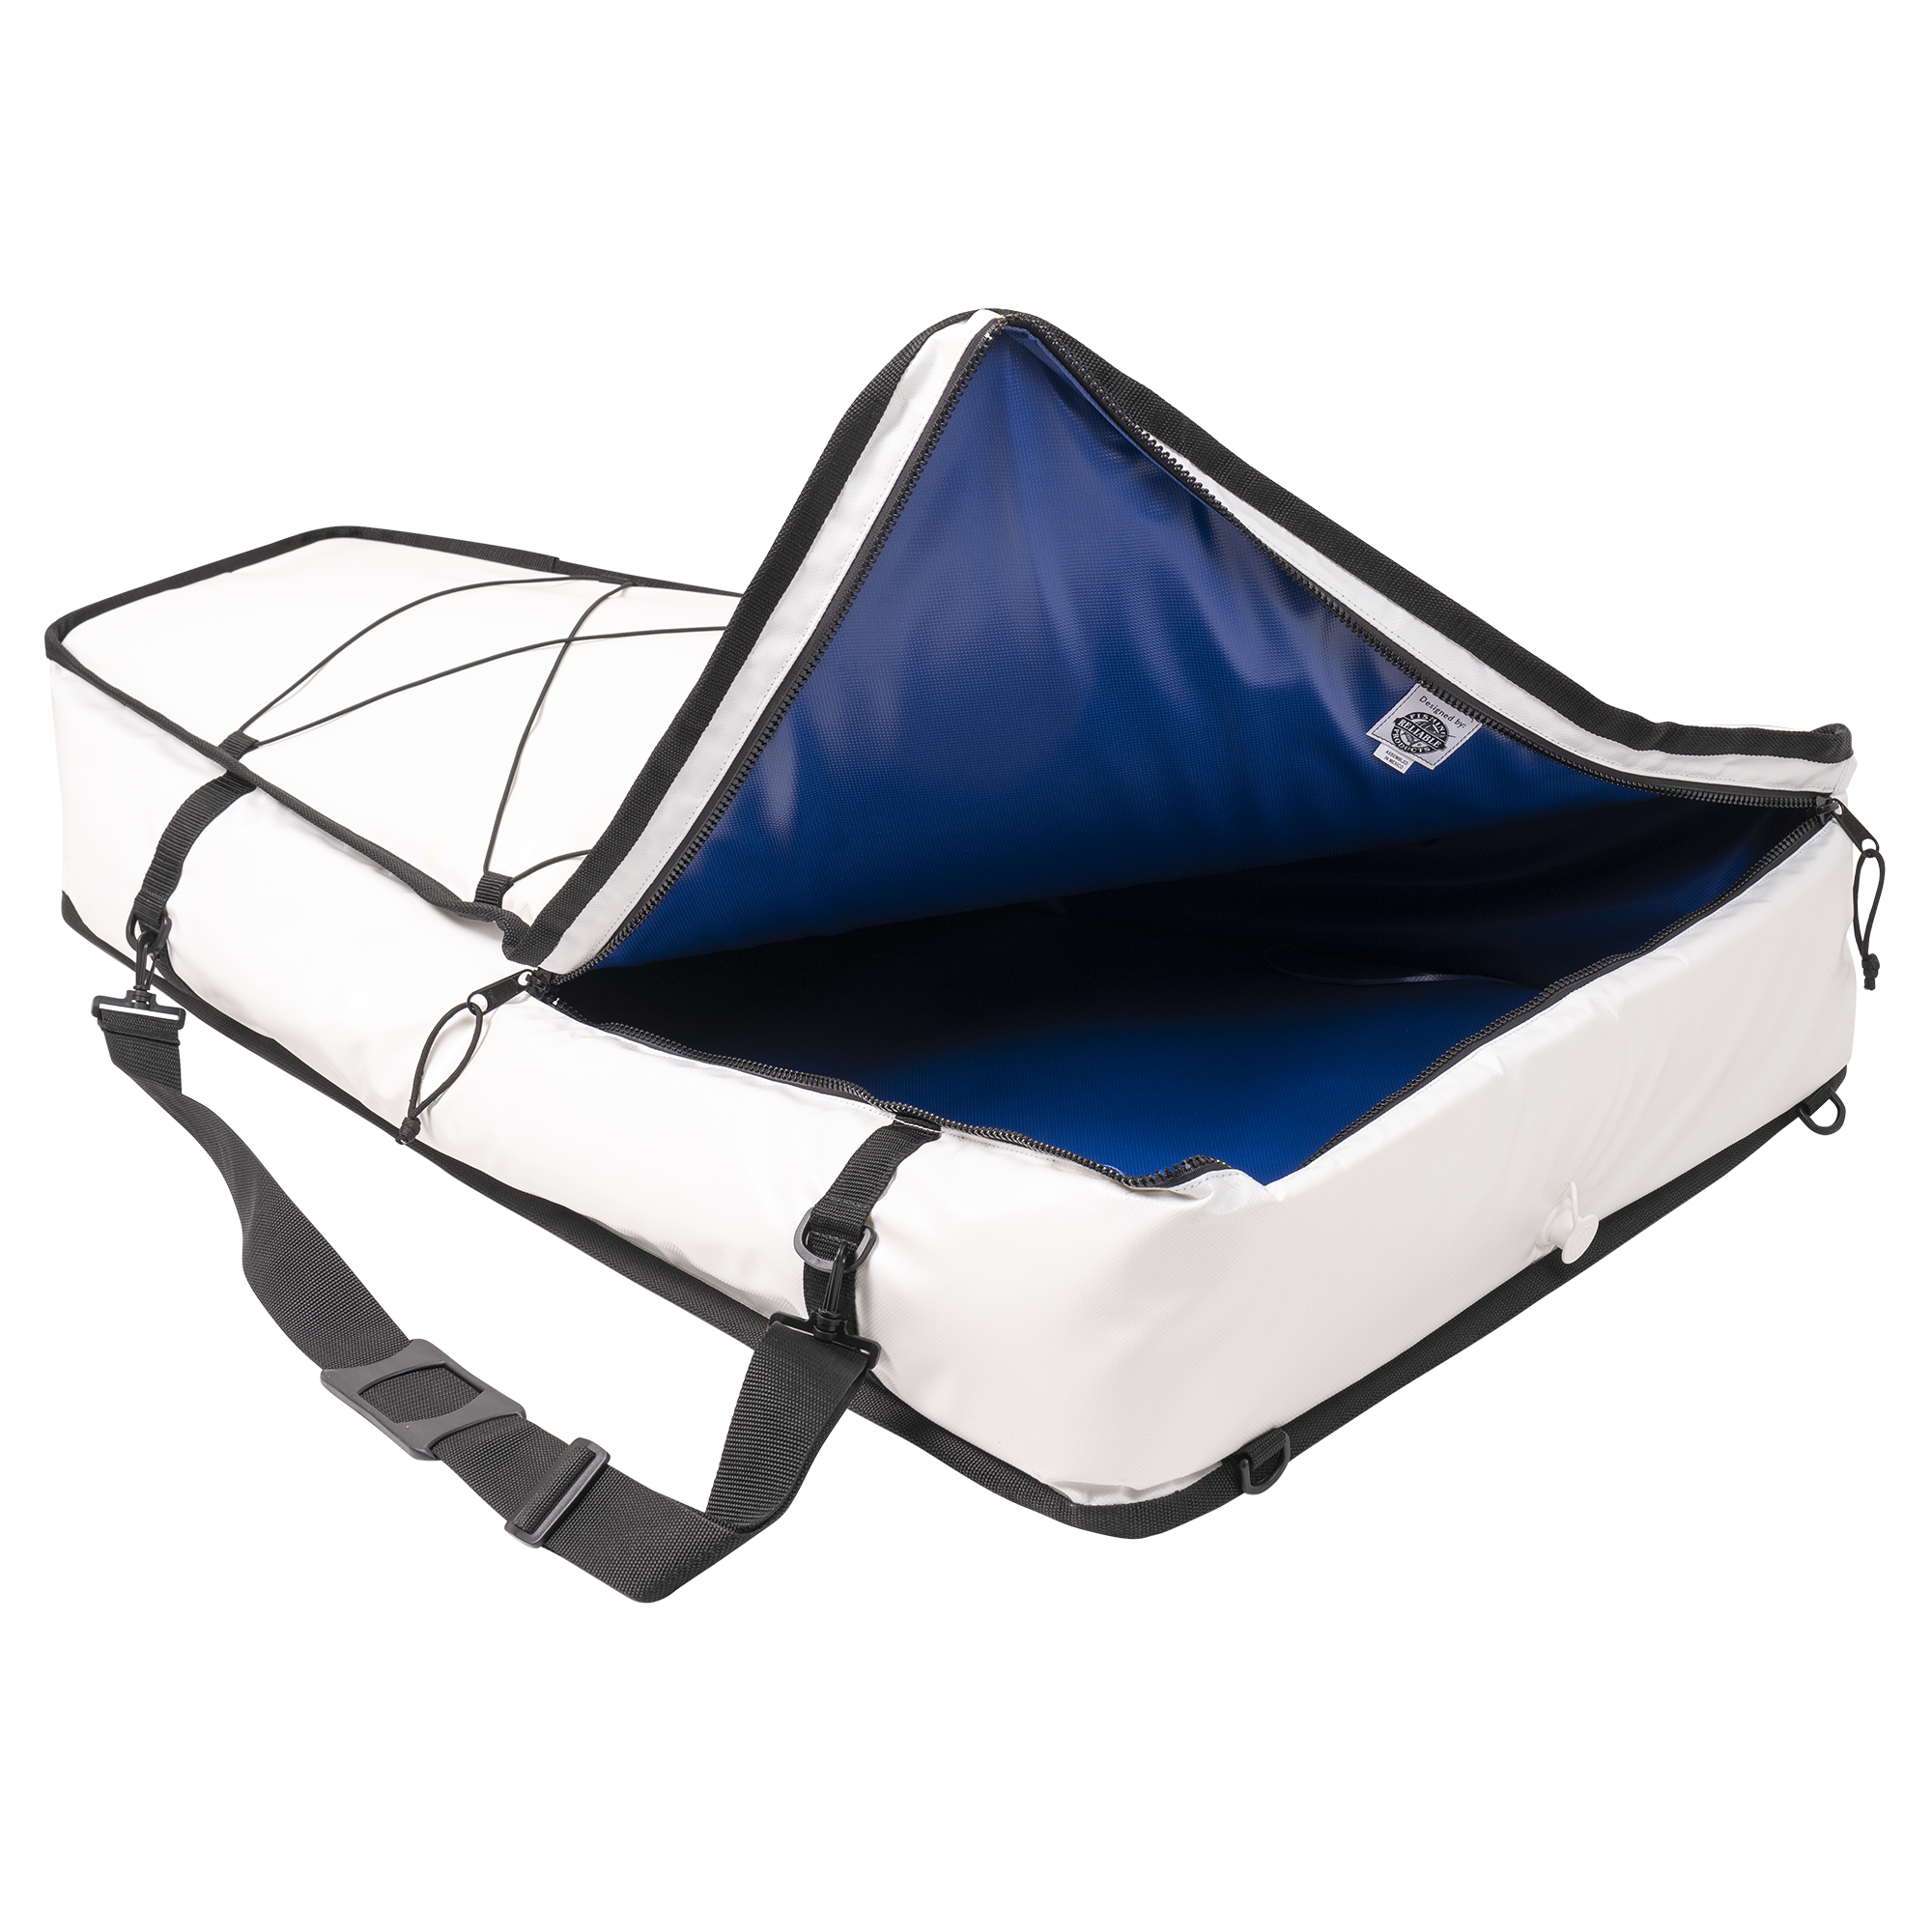 Hobie Kayak Extra Large Soft Cooler Fish Bag sku: